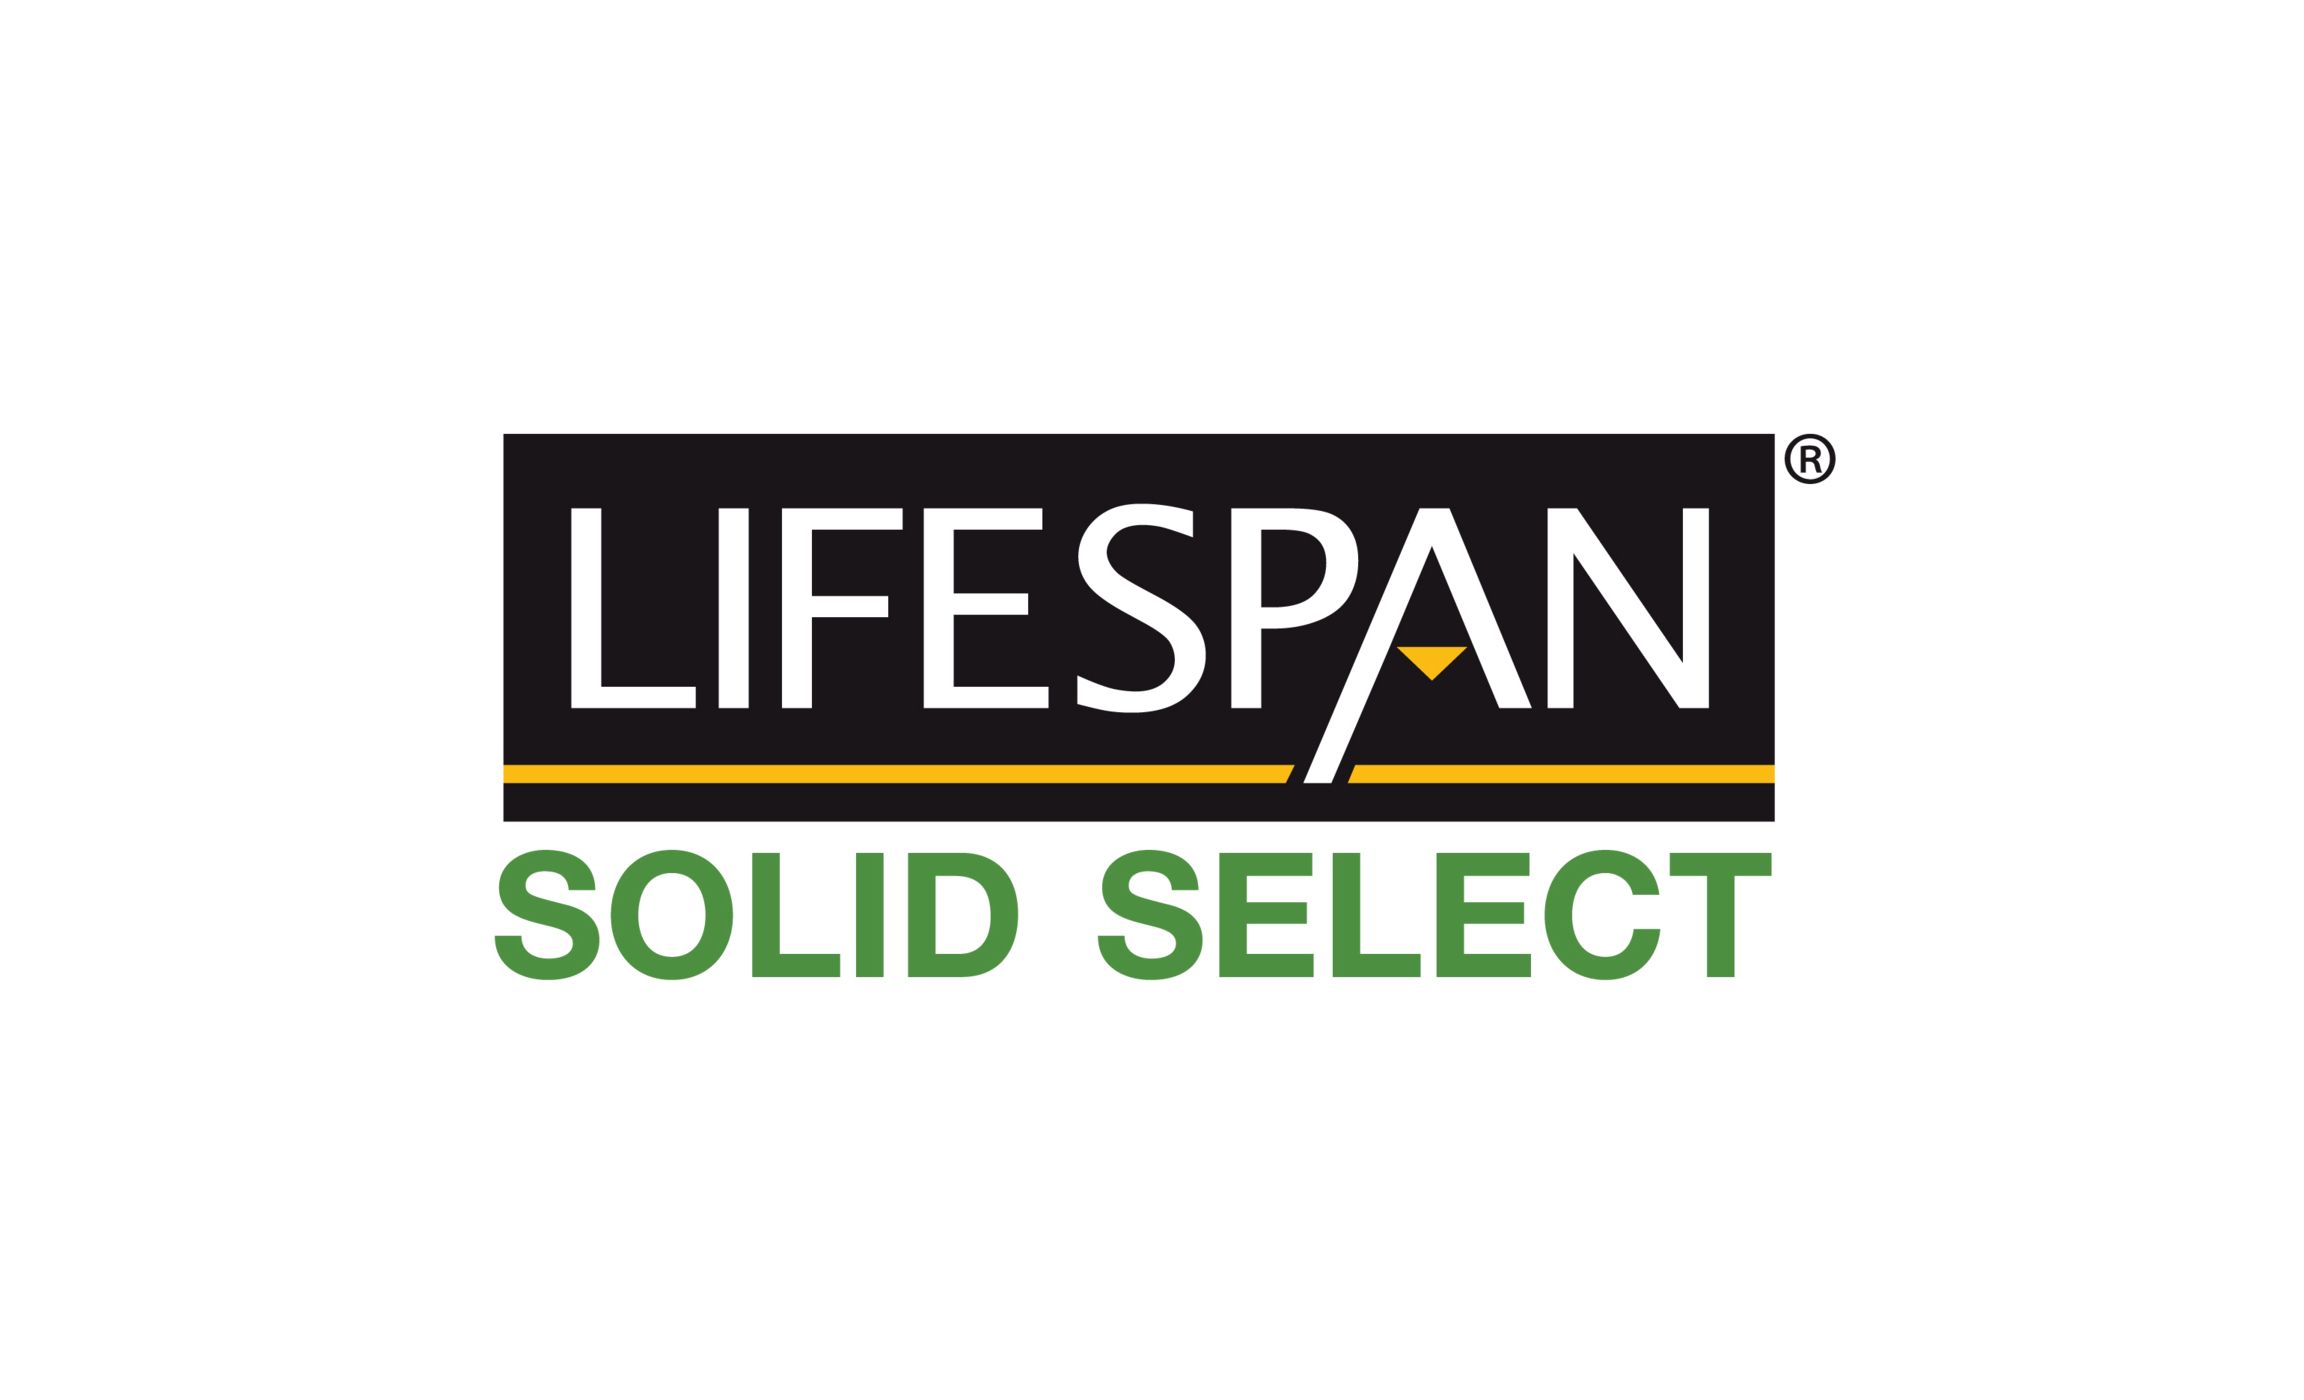 Lifespan_Solid_Select_logo